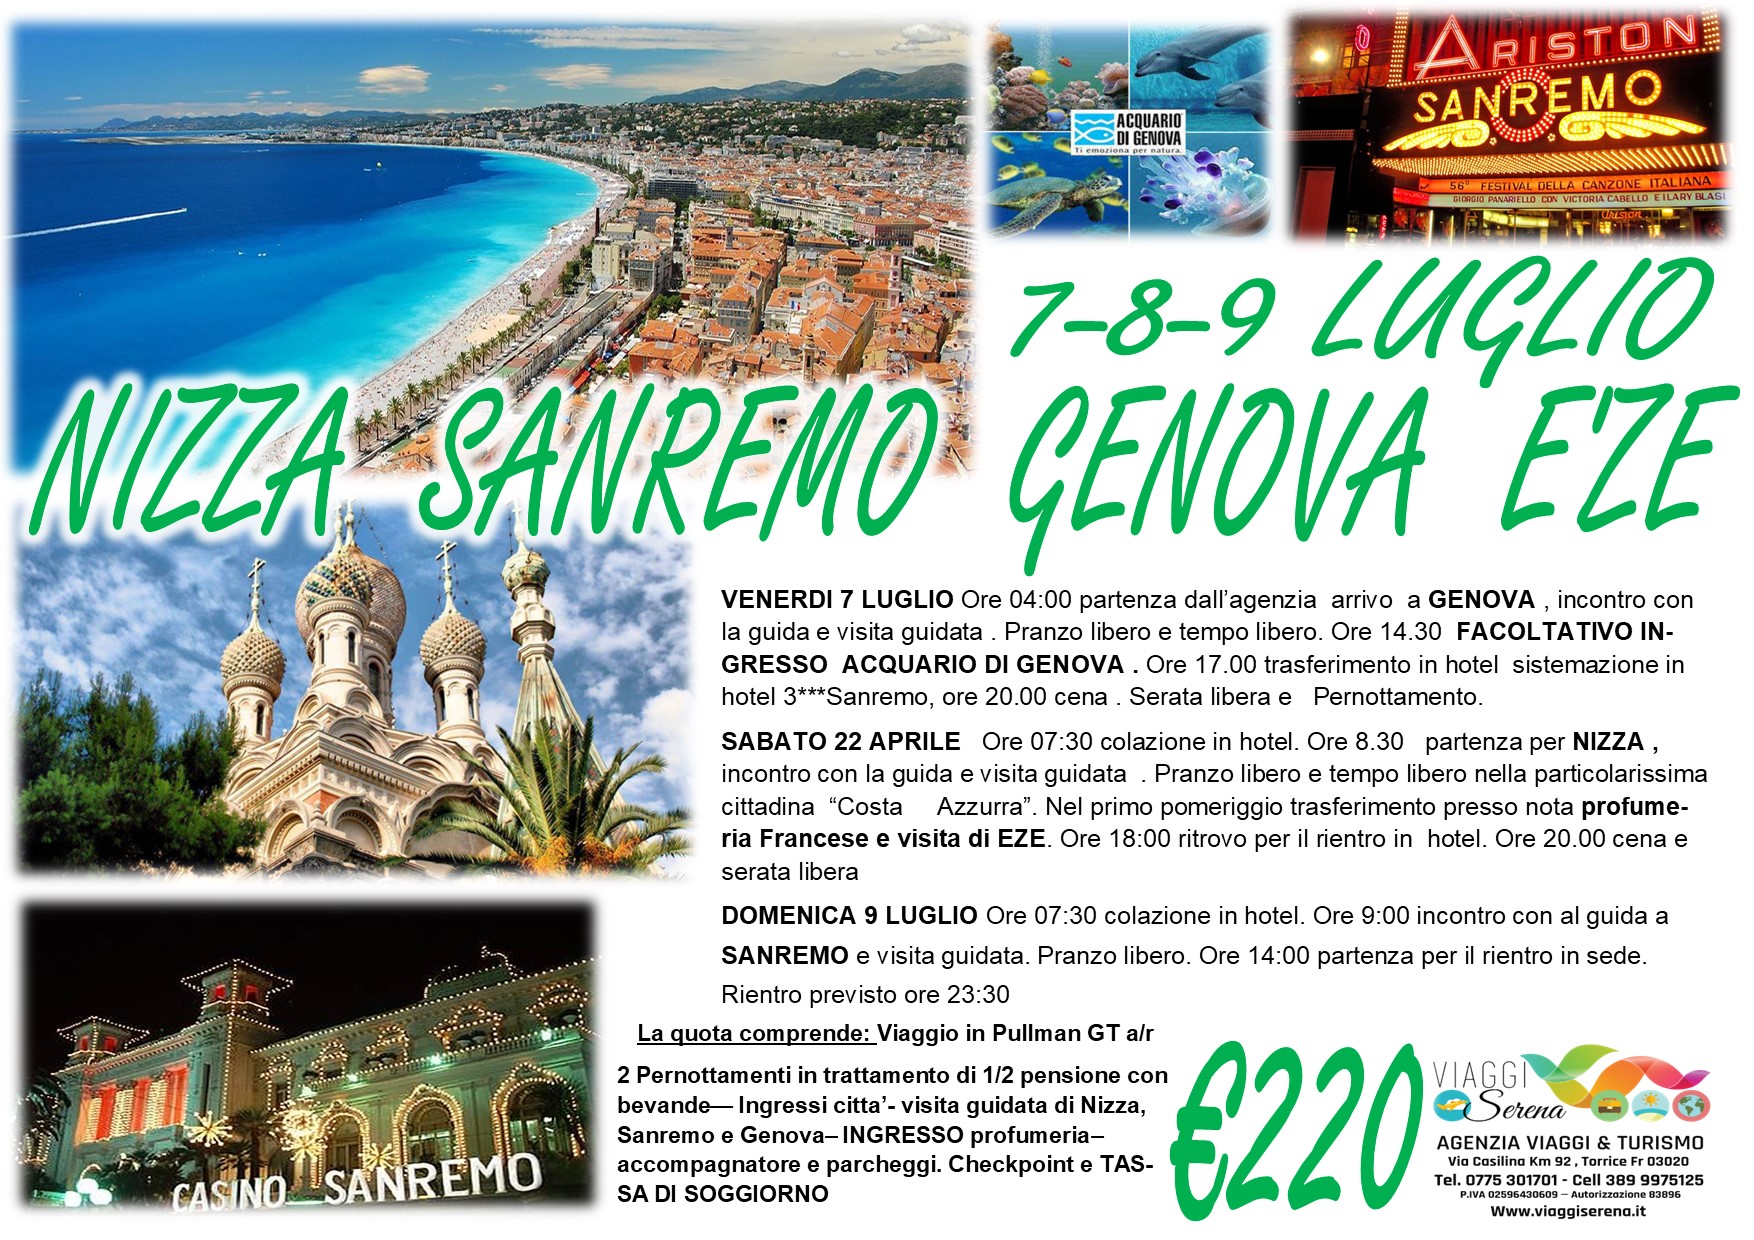 Viaggi di gruppo: Cannes, Sanremo, Eze’ & Genova 7-8-9 Luglio €220,00